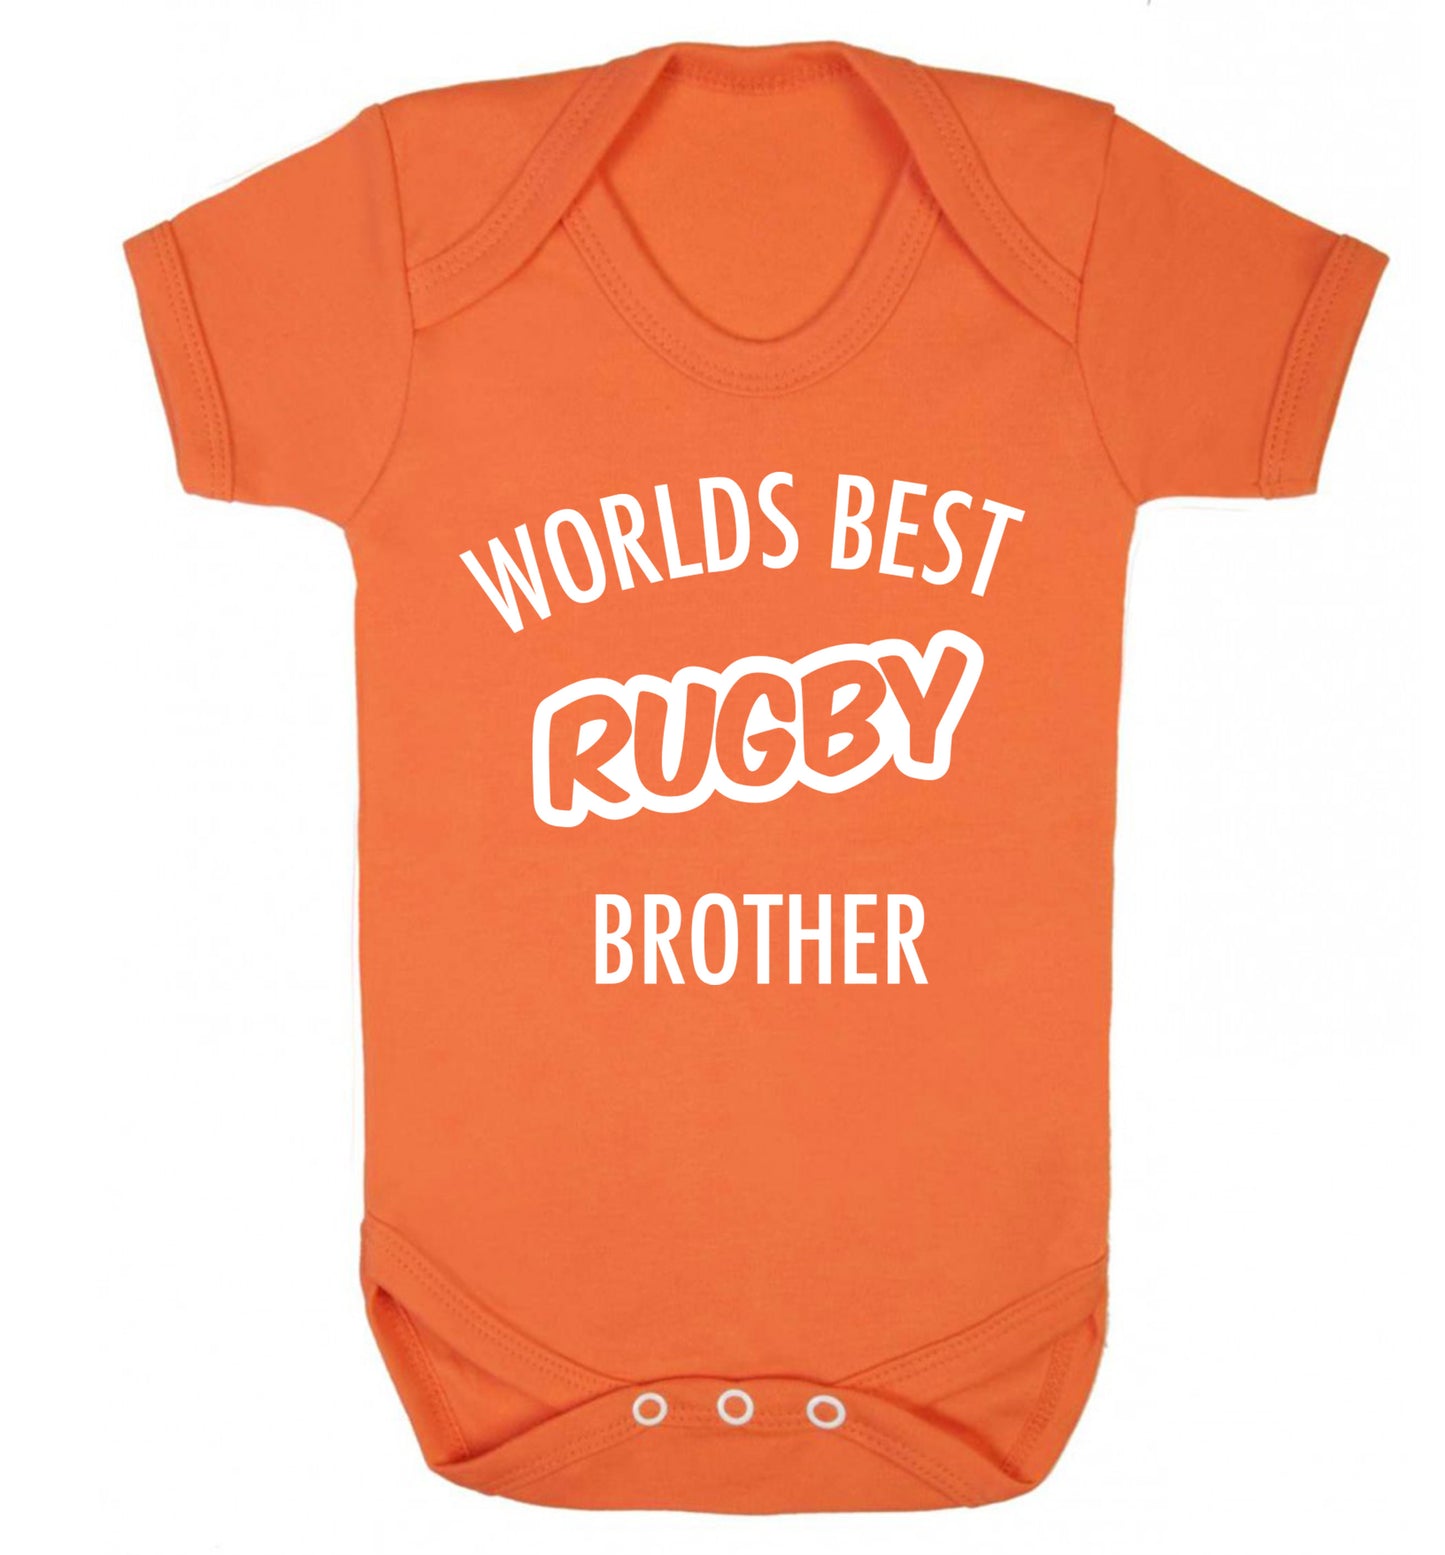 Worlds best rugby brother Baby Vest orange 18-24 months